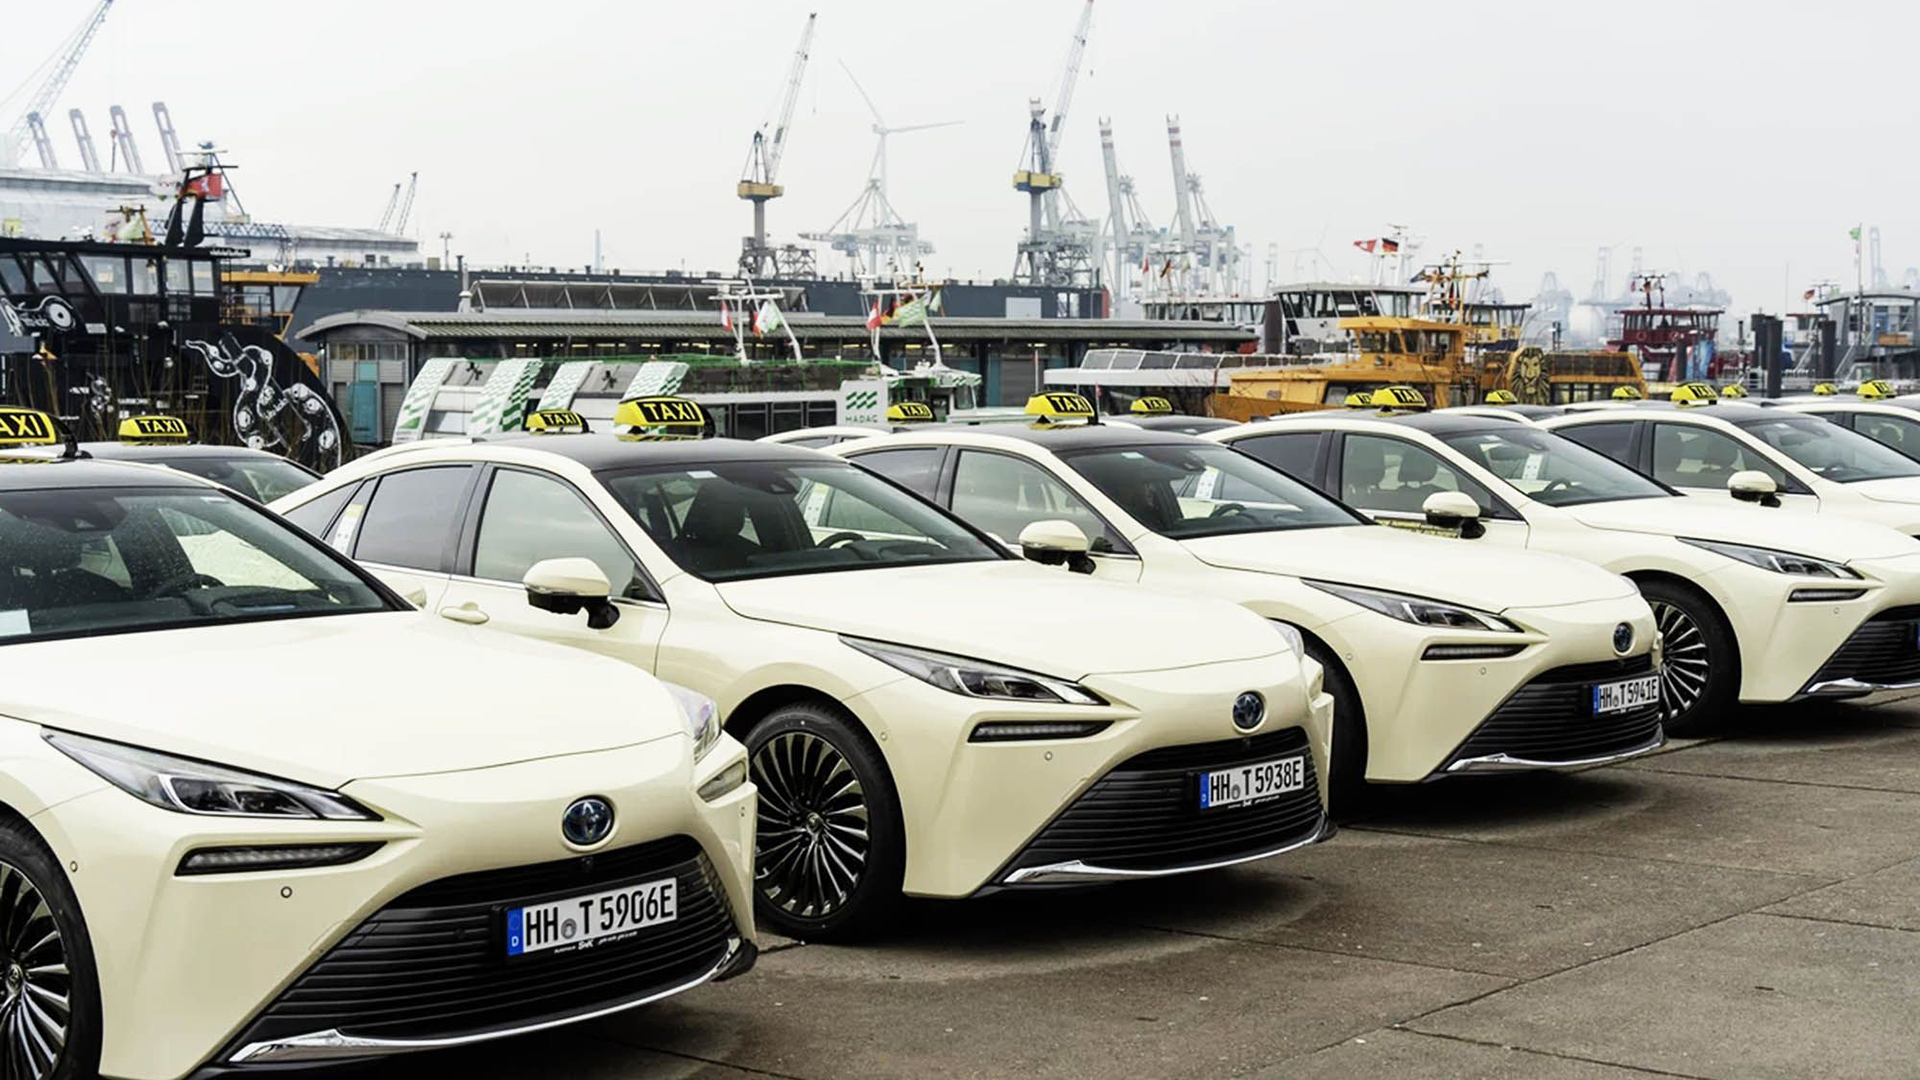 ¿El futuro?: otra gran ciudad europea se suma a la moda de taxis a hidrógeno